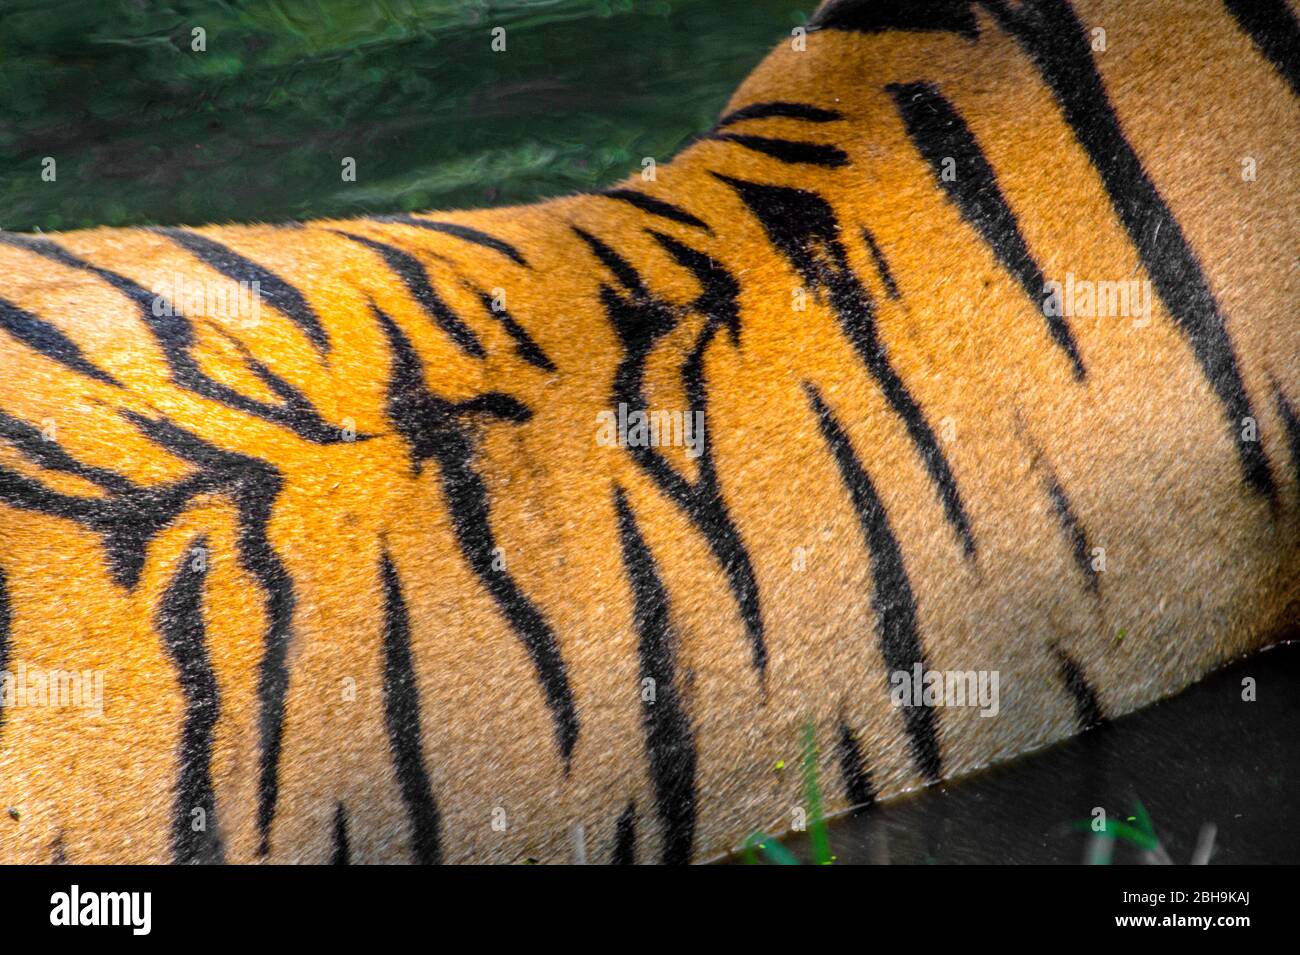 Bengal tiger back close up, India Stock Photo